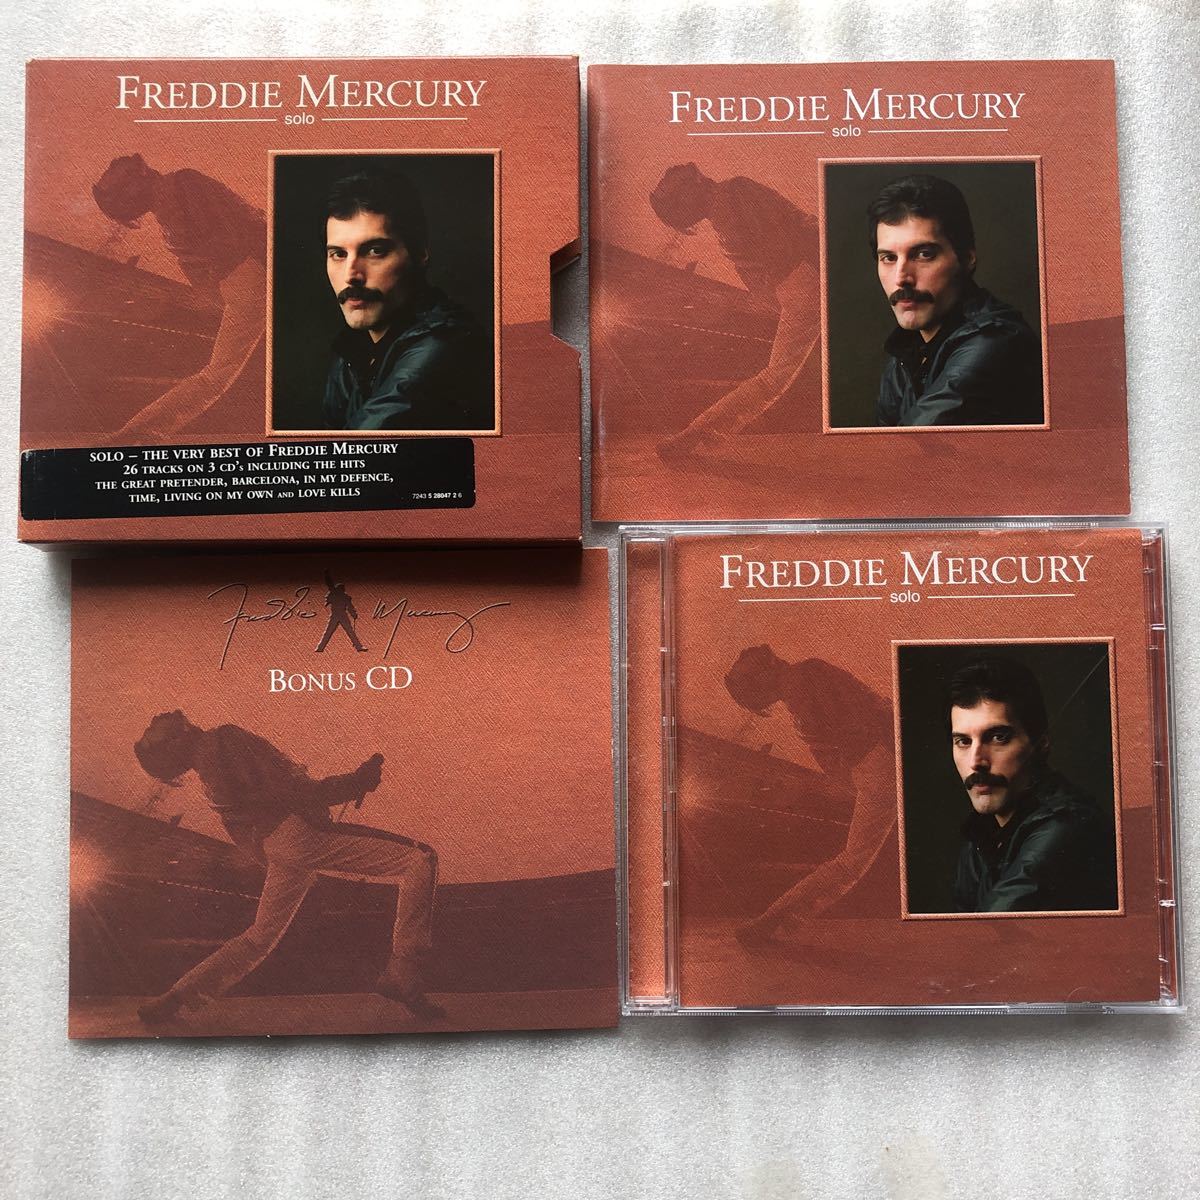 【ロック特集】フレディーマーキュリー FREDDIE MERCURY SOLO 限定BOX仕様輸入盤3枚組 CD クイーン 他多数出品中